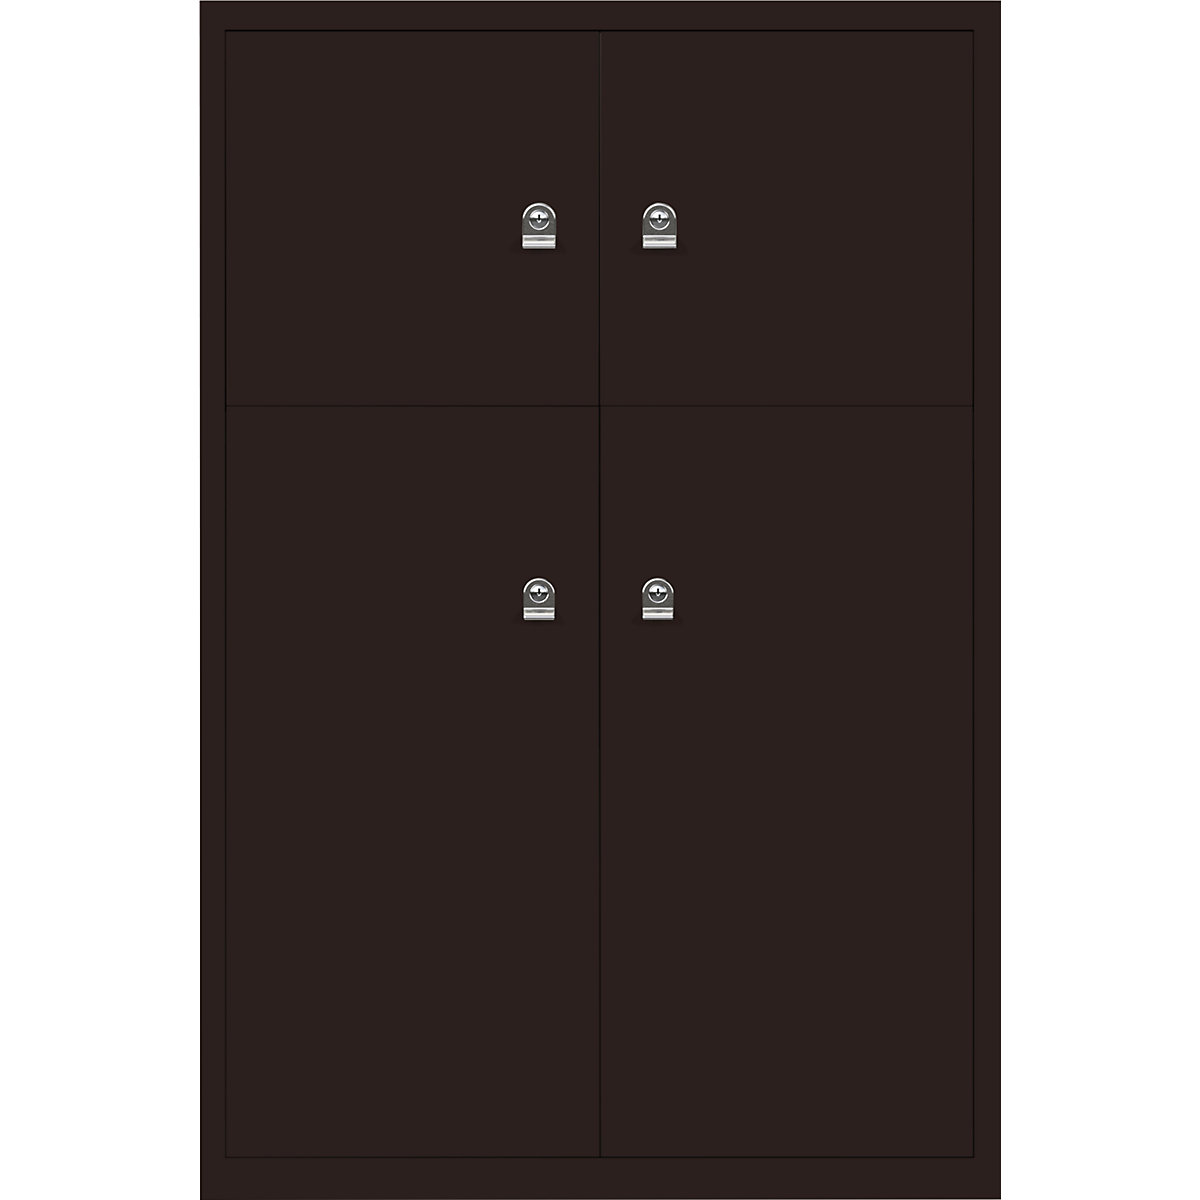 Omara s predelki z zaklepanjem LateralFile™ – BISLEY, 4 predelki z zaklepanjem, višina 2 x 375 mm, 2 x 755 mm, rjave barve-17